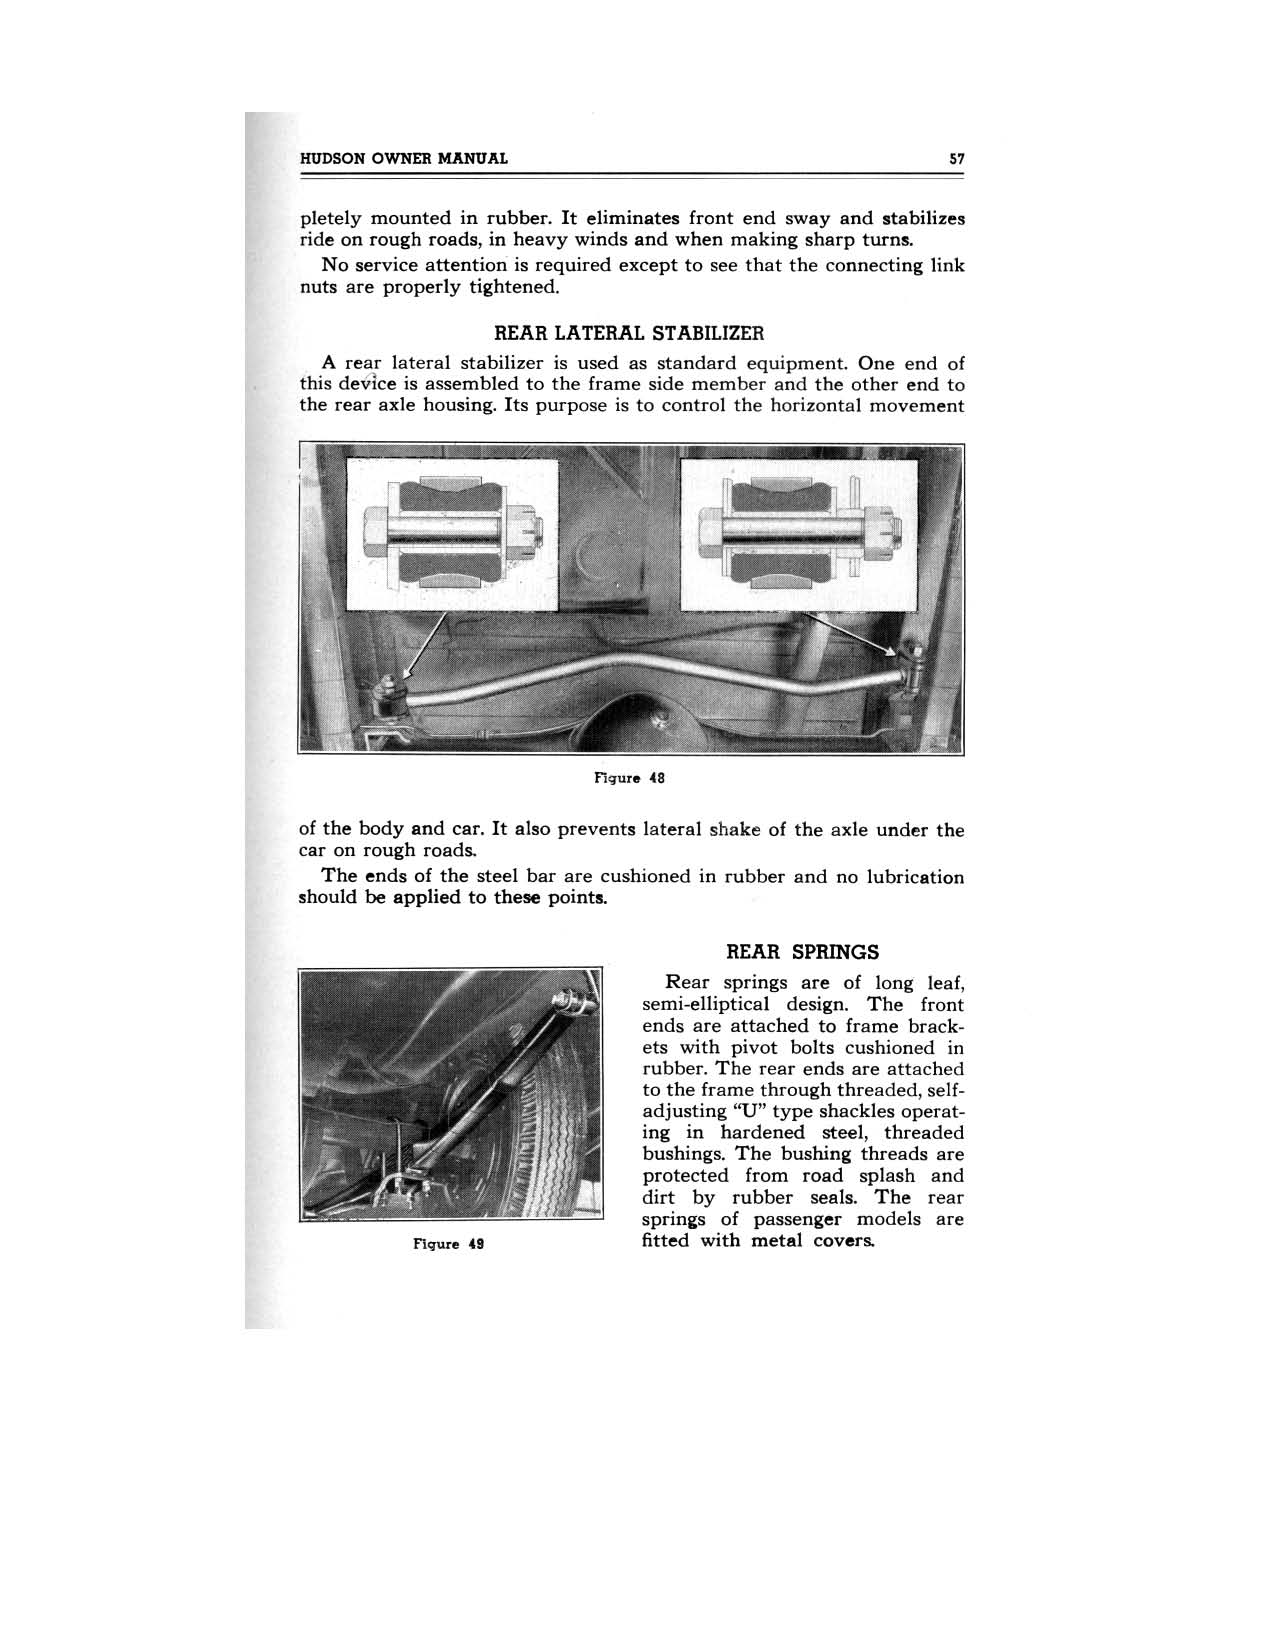 1949 Hudson Owners Manual-59